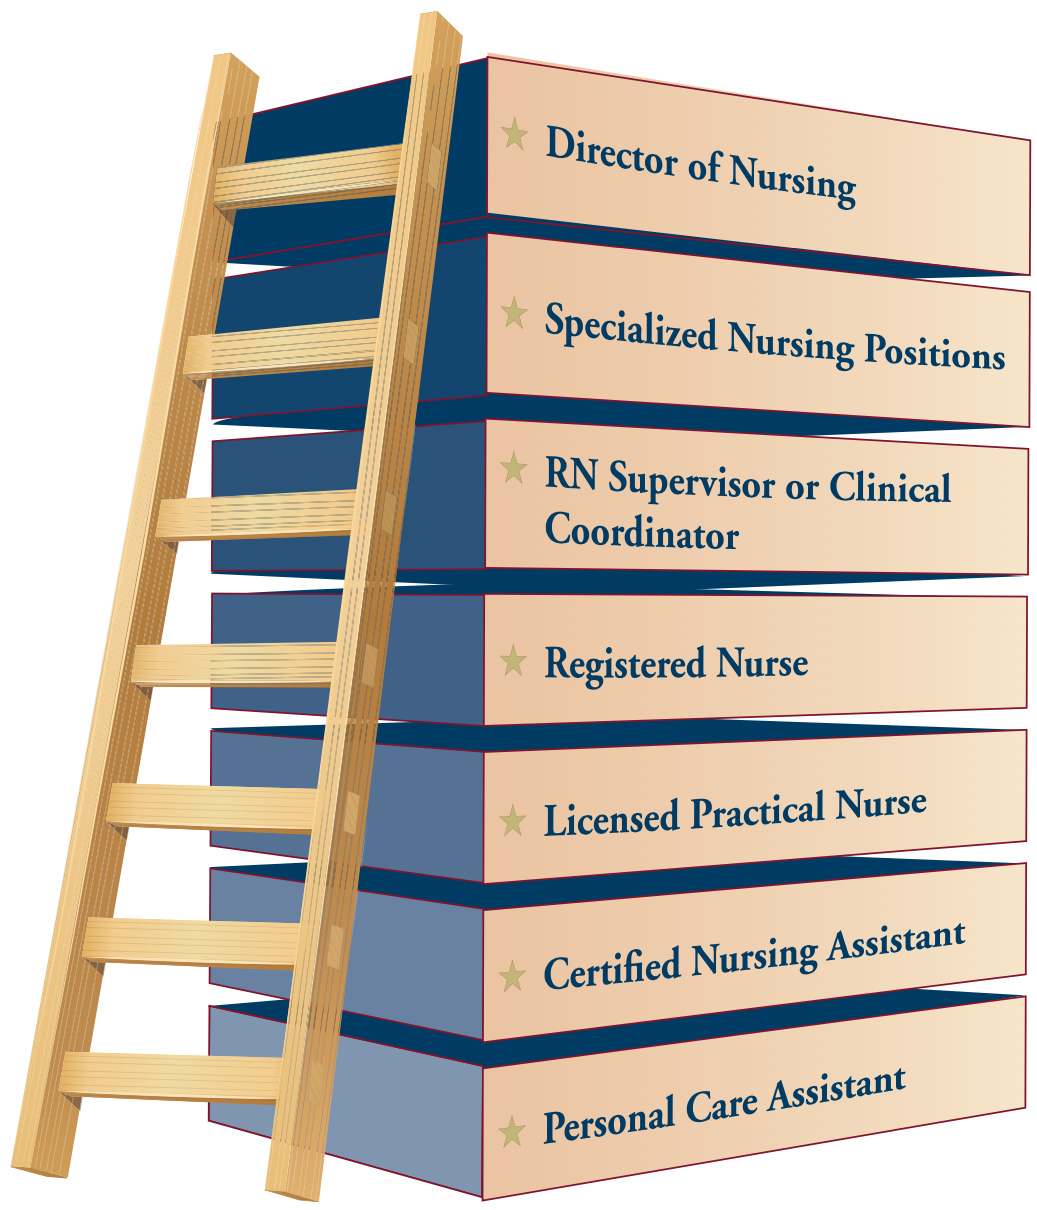 Nursing Career Ladder - Director of Nursing, Specialized Nursing Positions, RN Supervisor or Clinical Coordinator, Registered Nurse, Licensed Practical Nurse, Certified Nursing Assistant, Personal Care Assistant